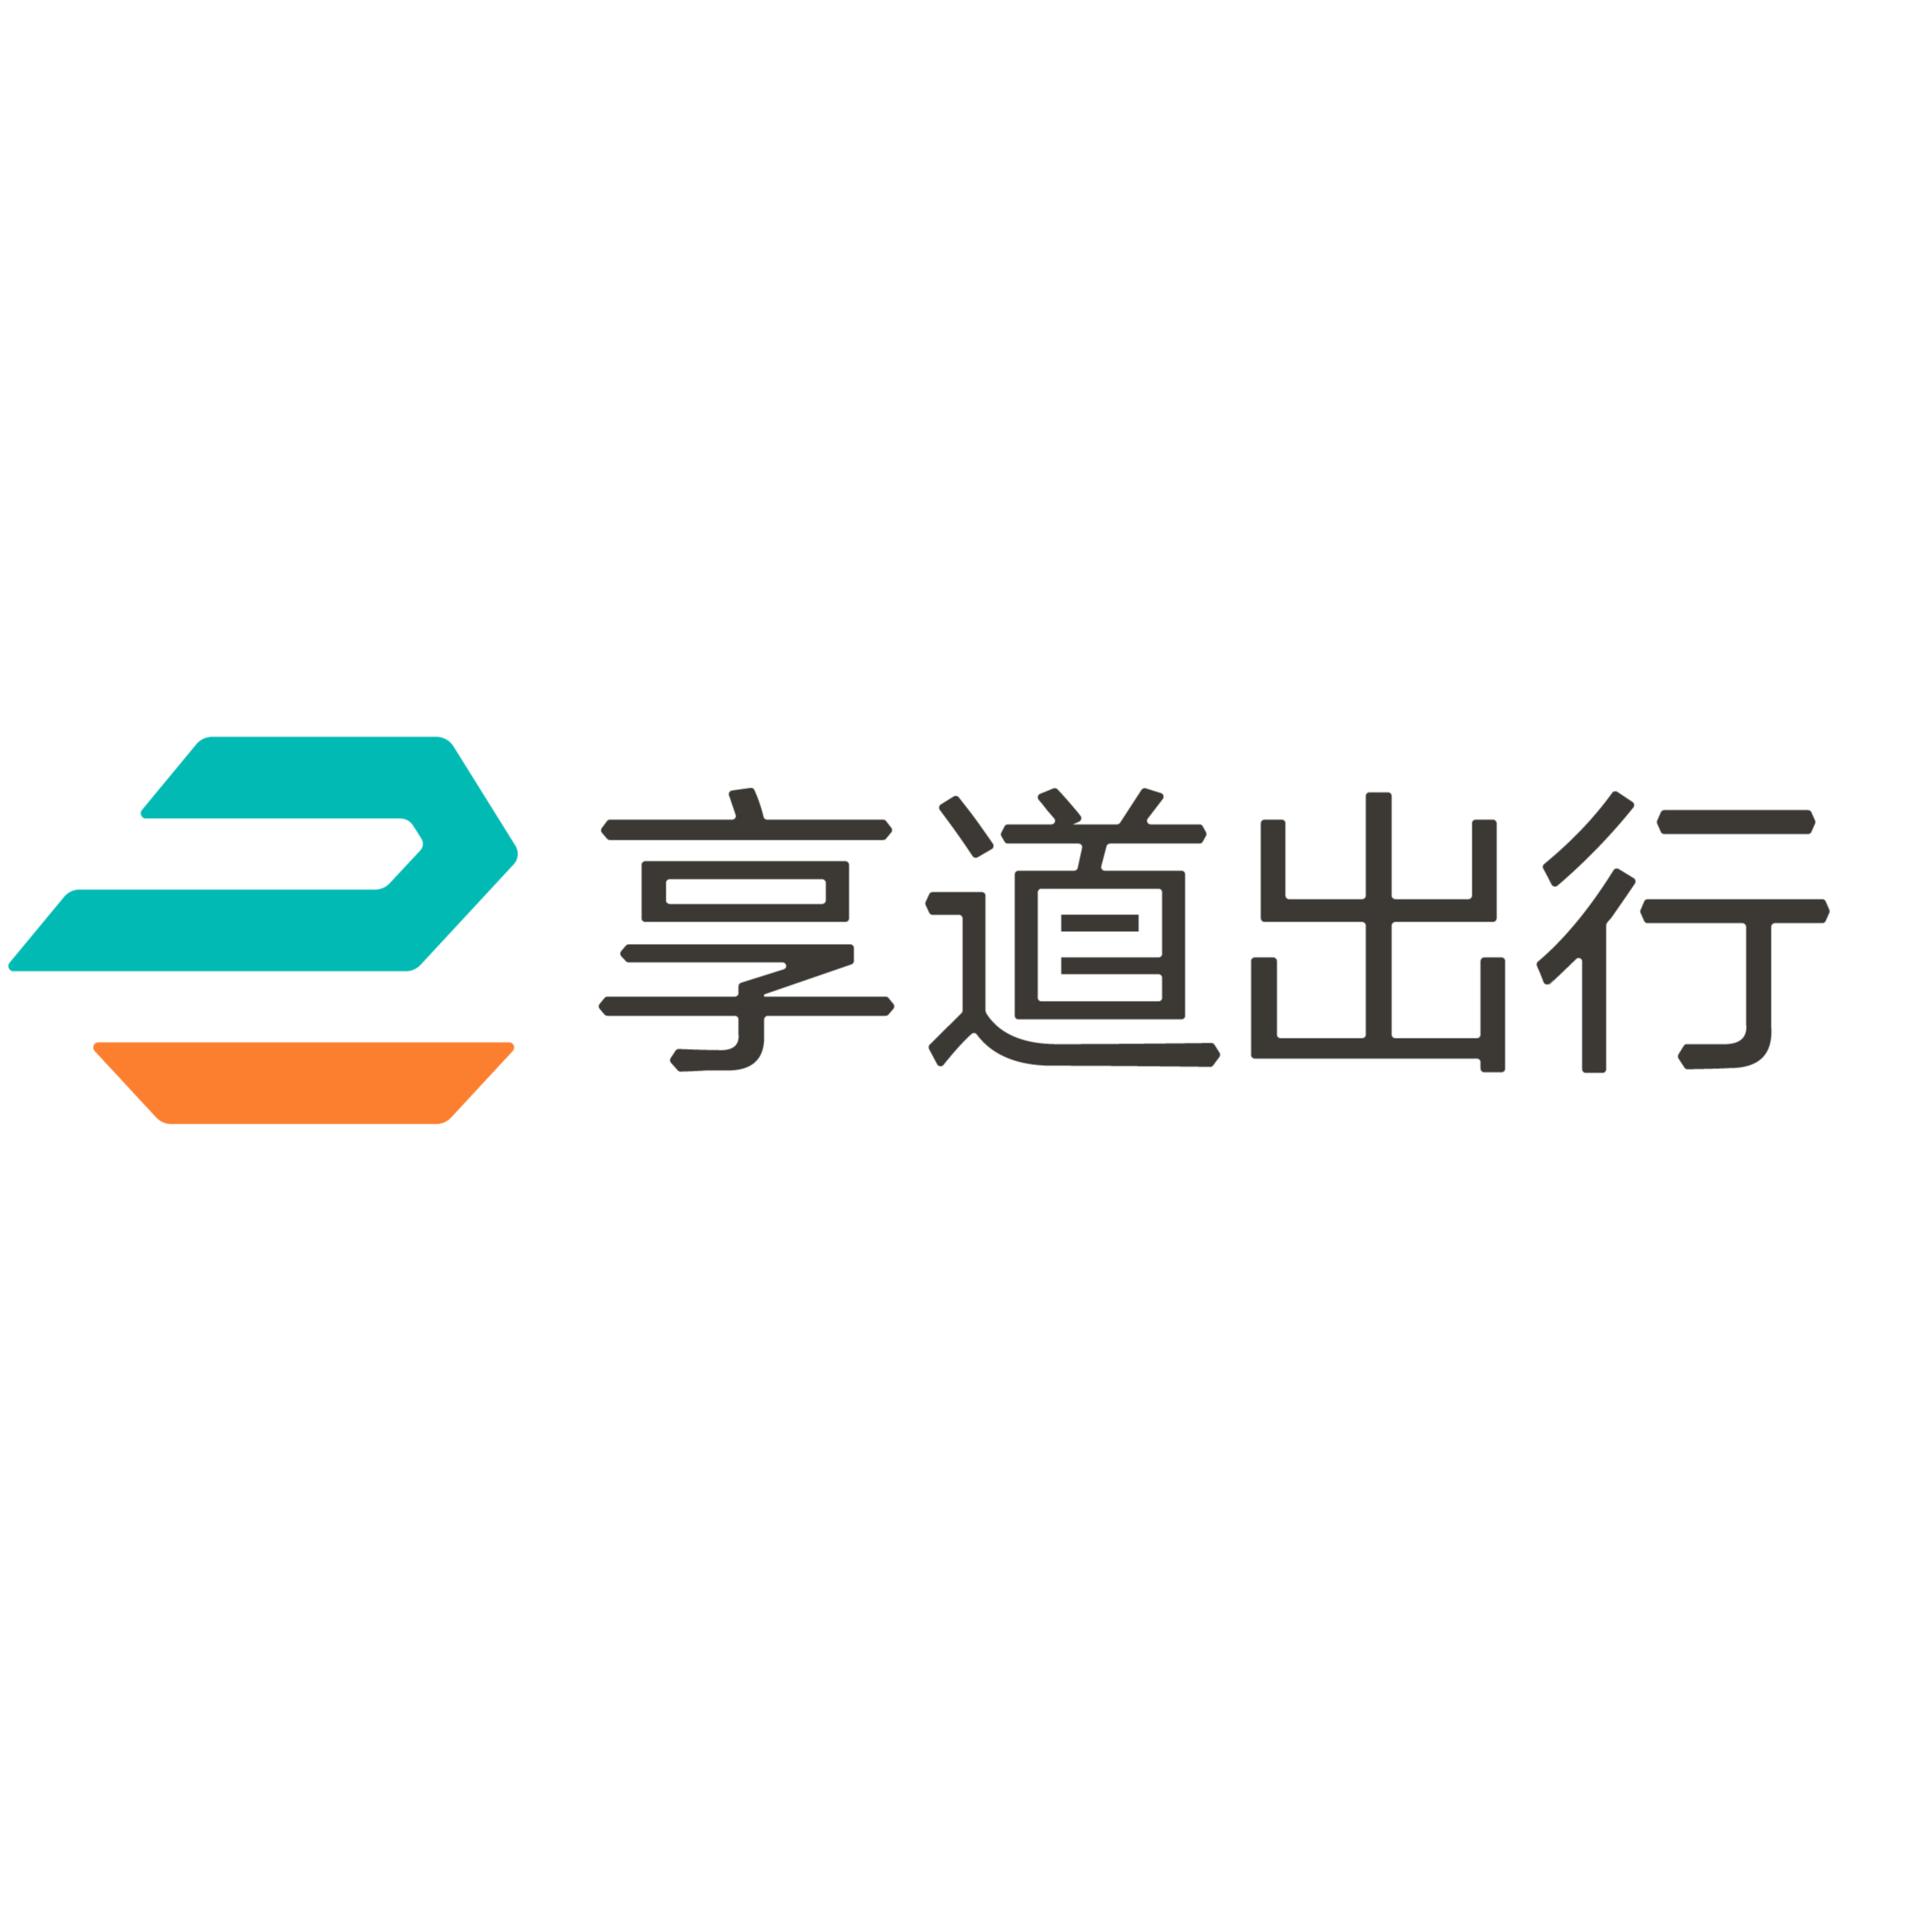 上海赛可出行科技服务有限公司